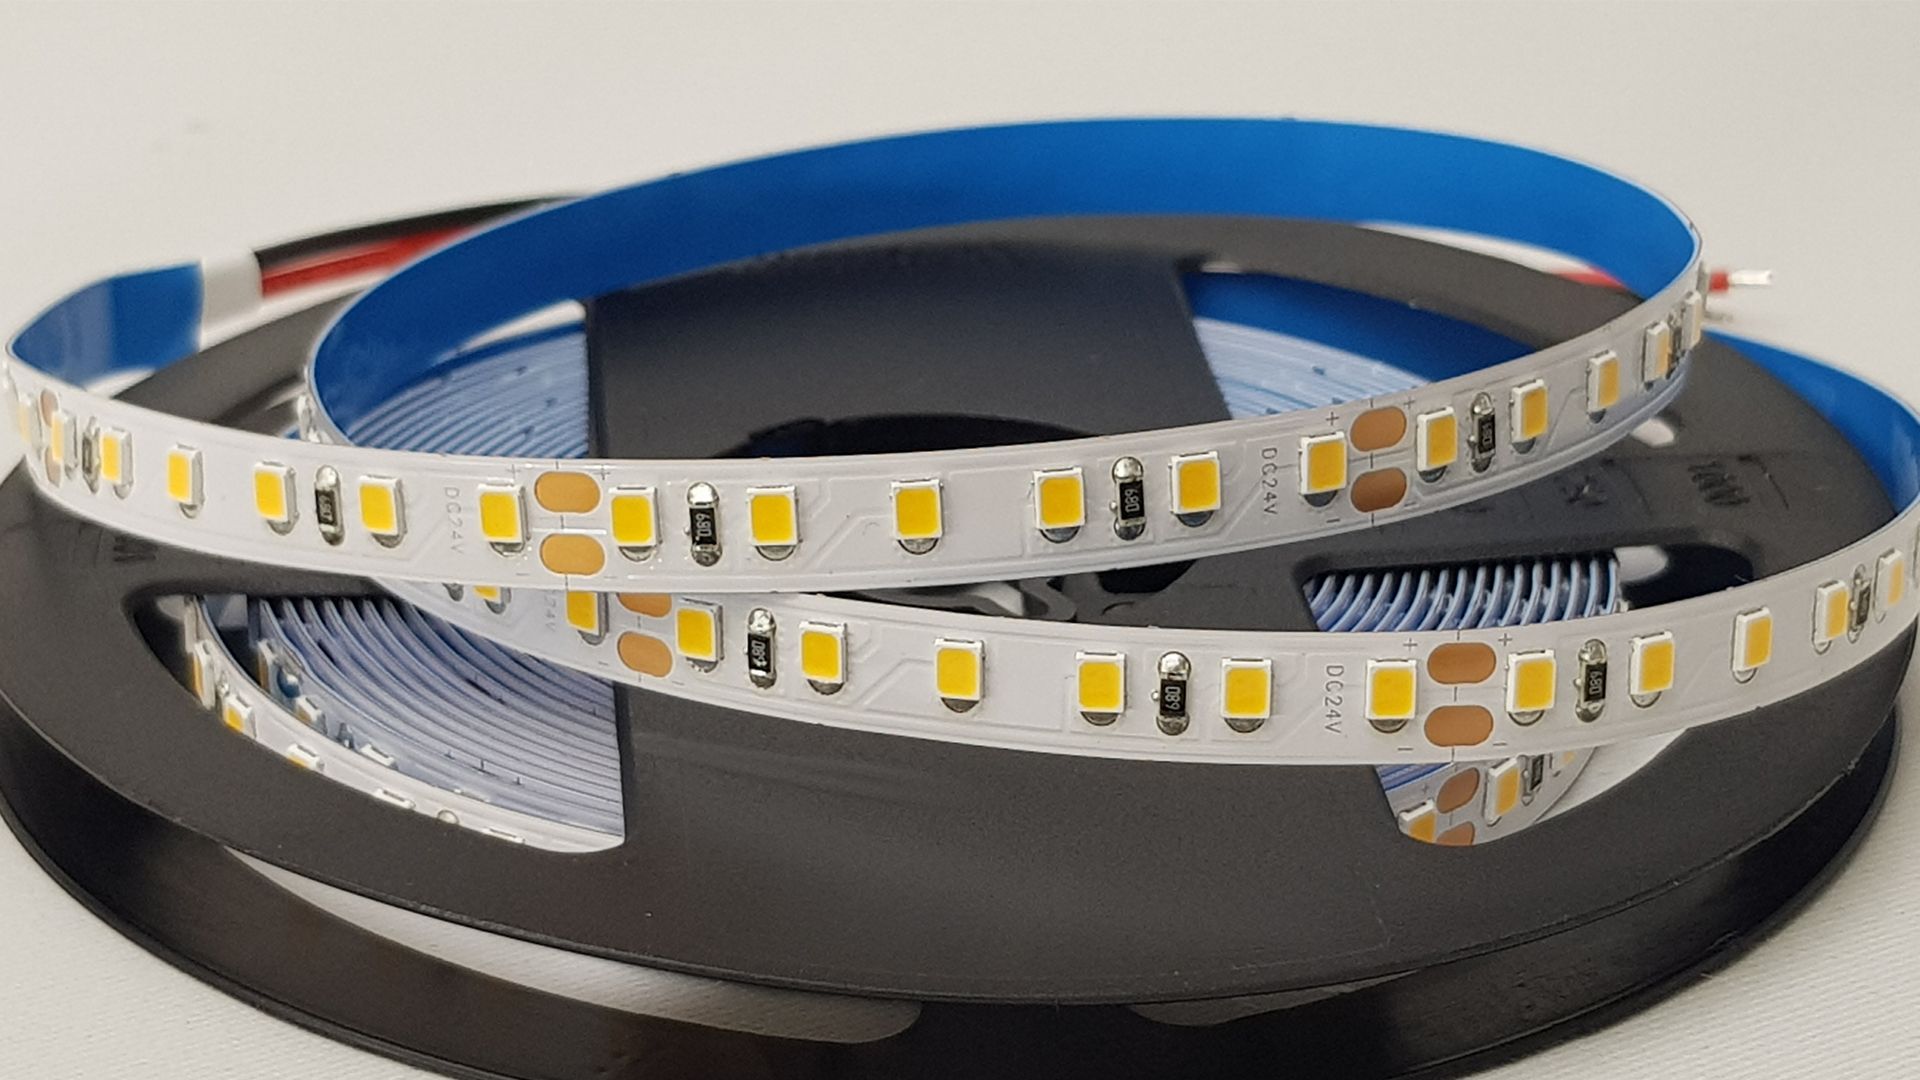 Plnospektrální LED pásek